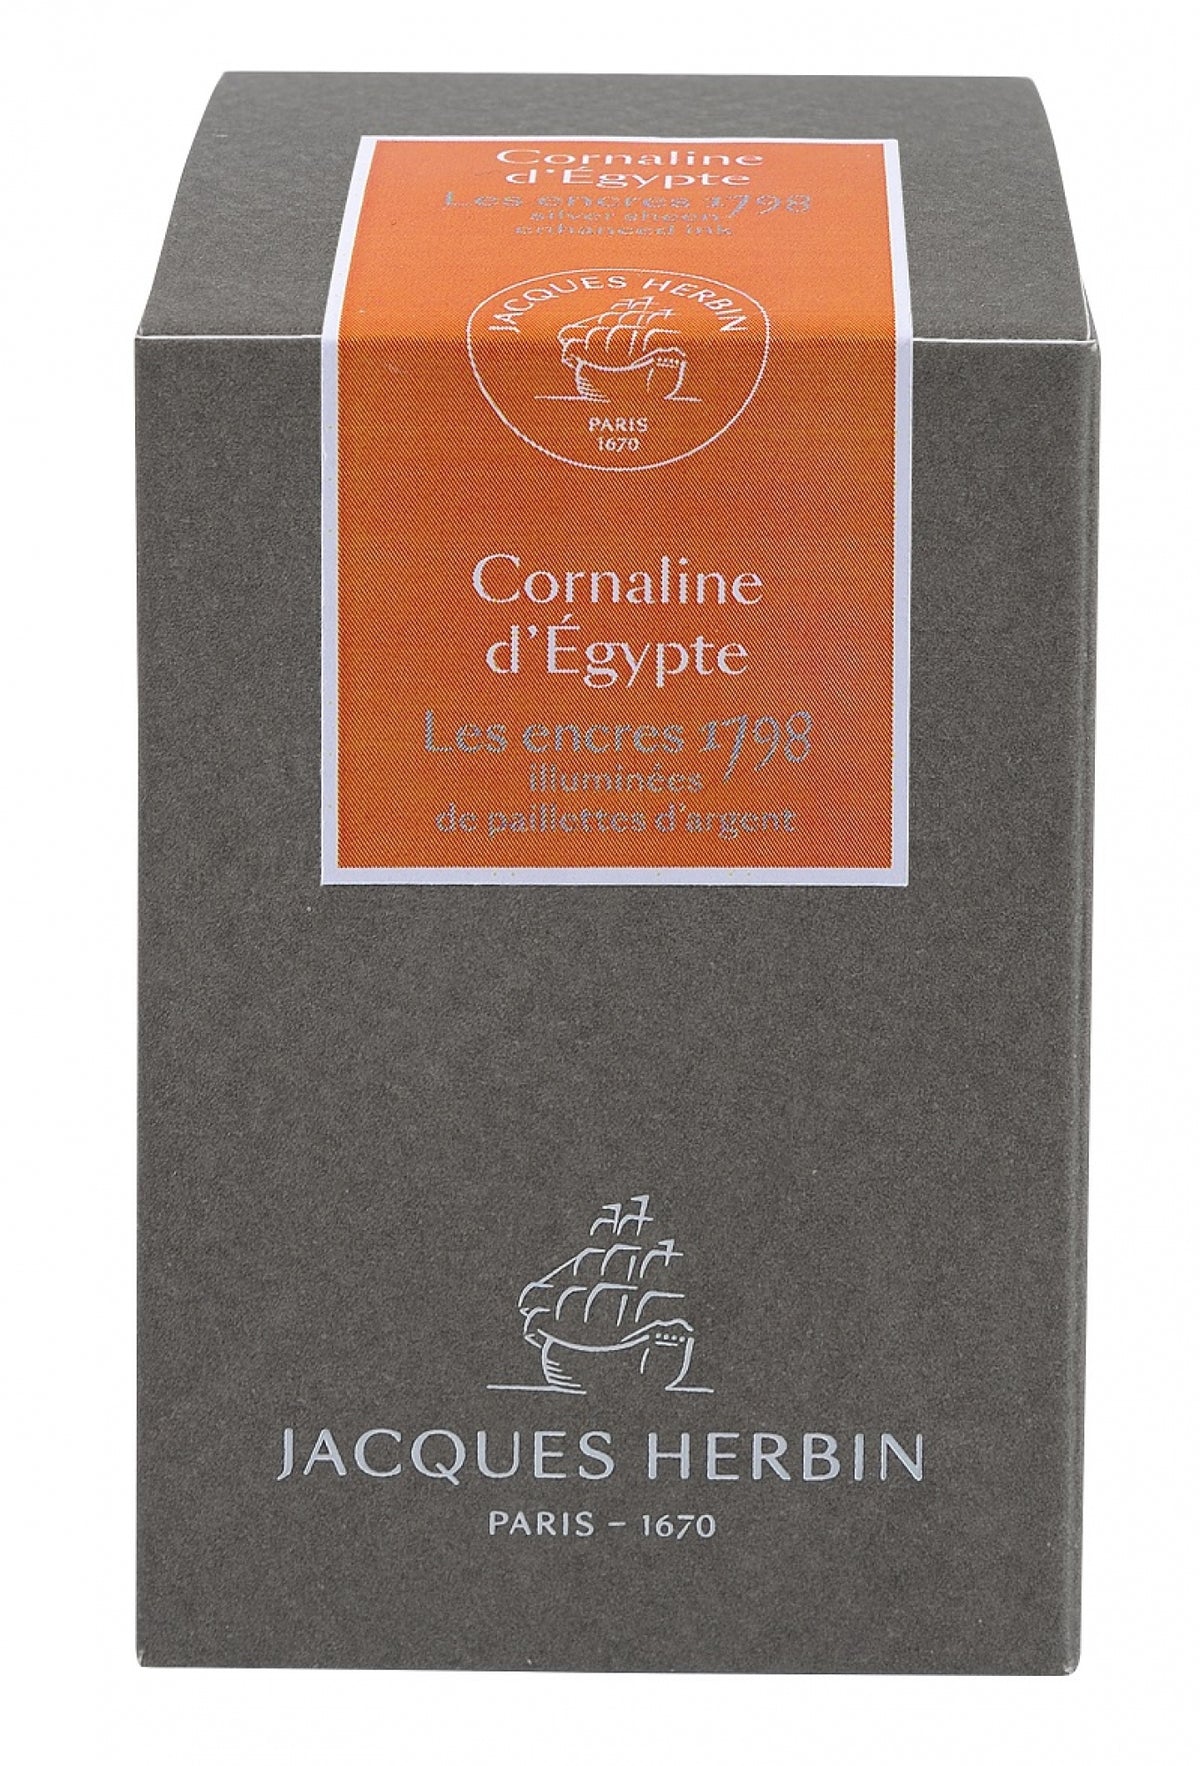 J Herbin 1798 Cornaline d'Egypte